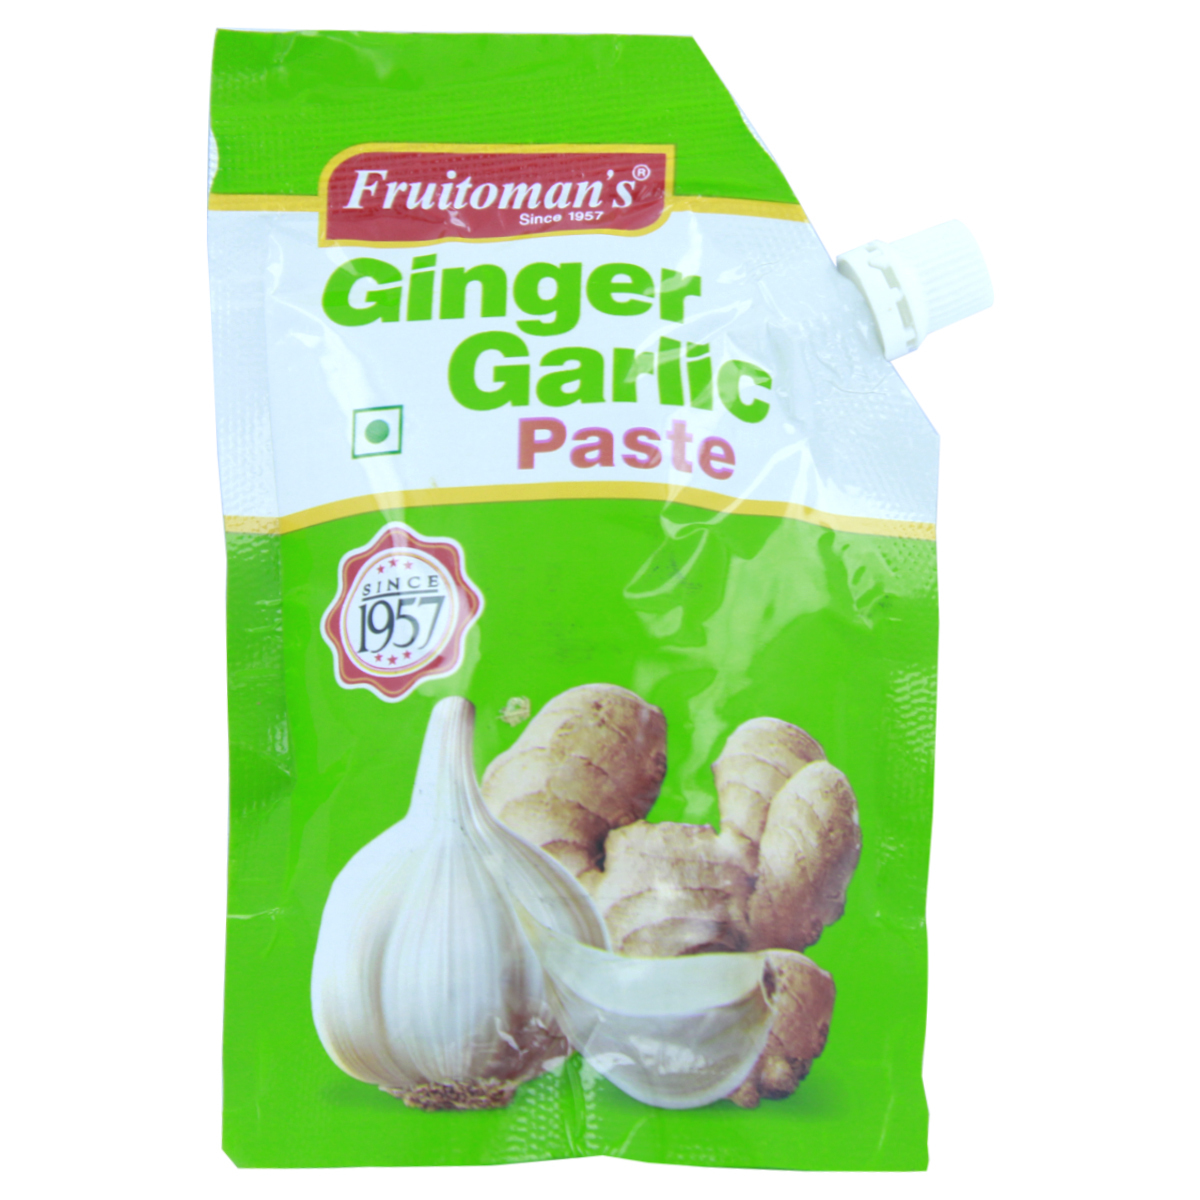 Fruitoman's Ginger Garlic Paste 100g